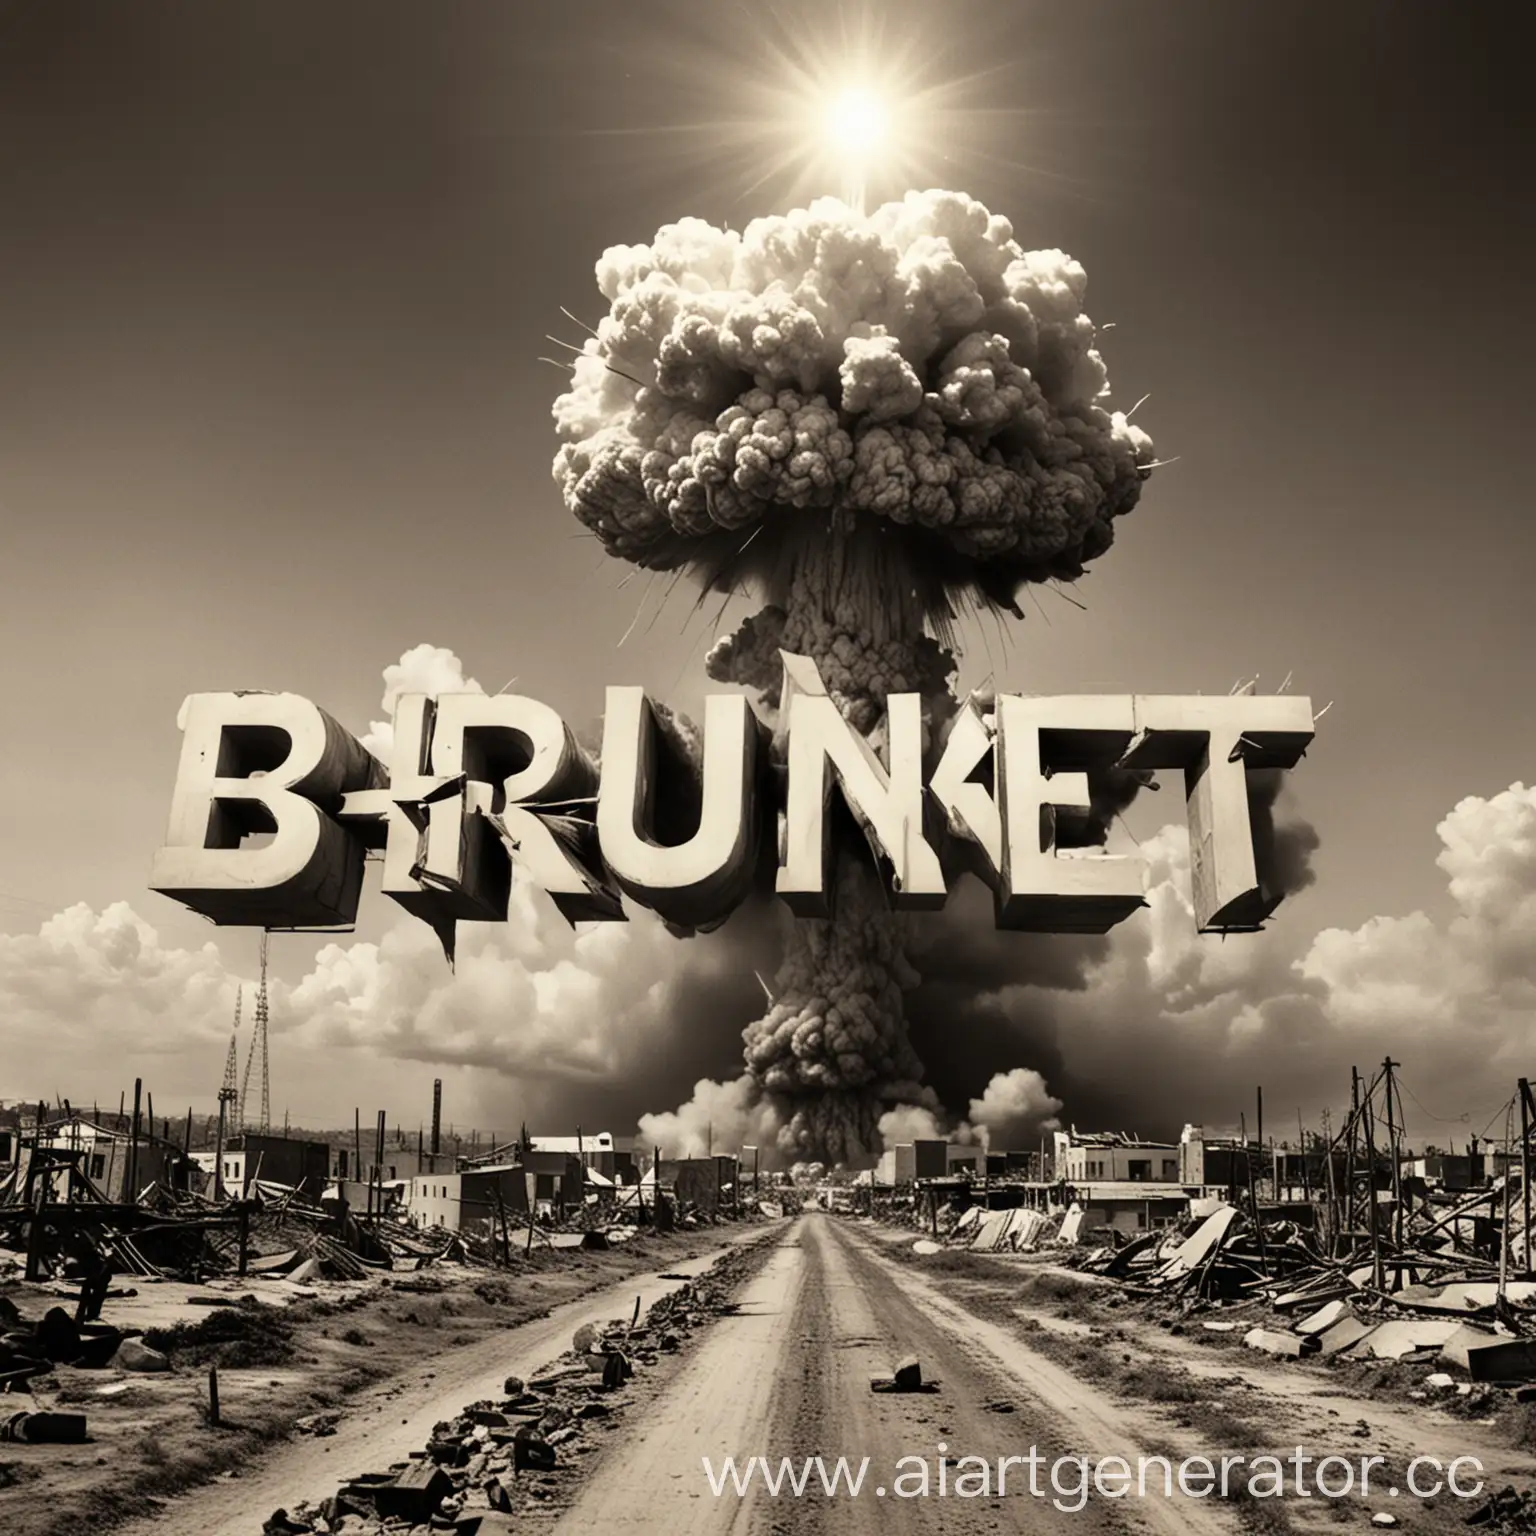 BrutNet-Word-Behind-Atomic-Explosion